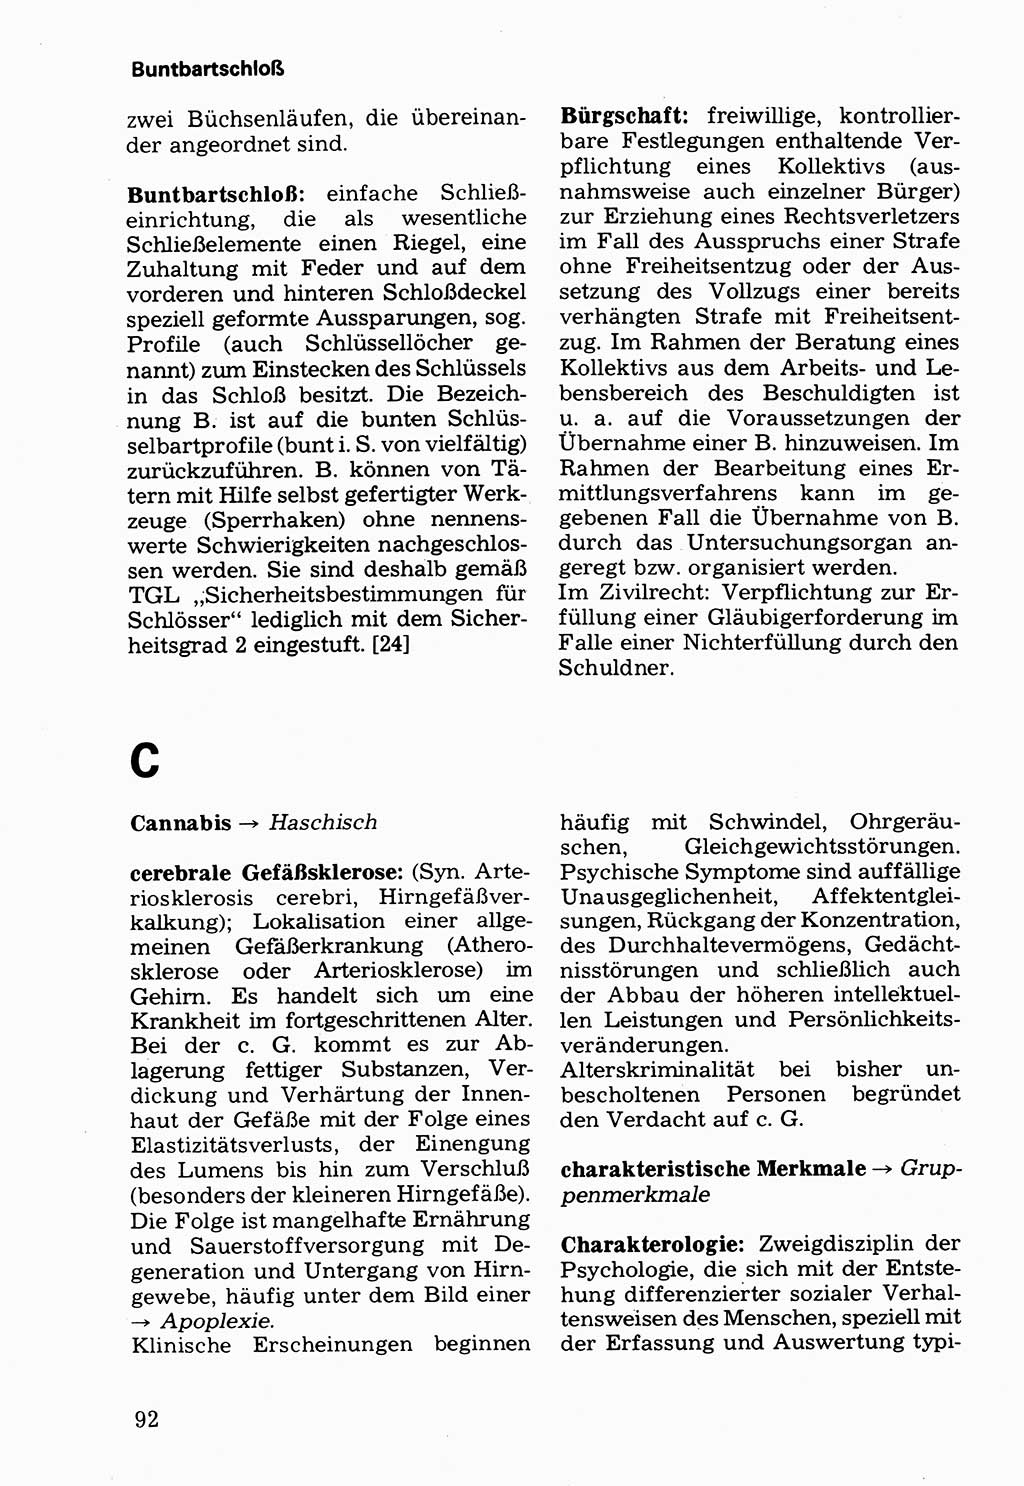 Wörterbuch der sozialistischen Kriminalistik [Deutsche Demokratische Republik (DDR)] 1981, Seite 92 (Wb. soz. Krim. DDR 1981, S. 92)